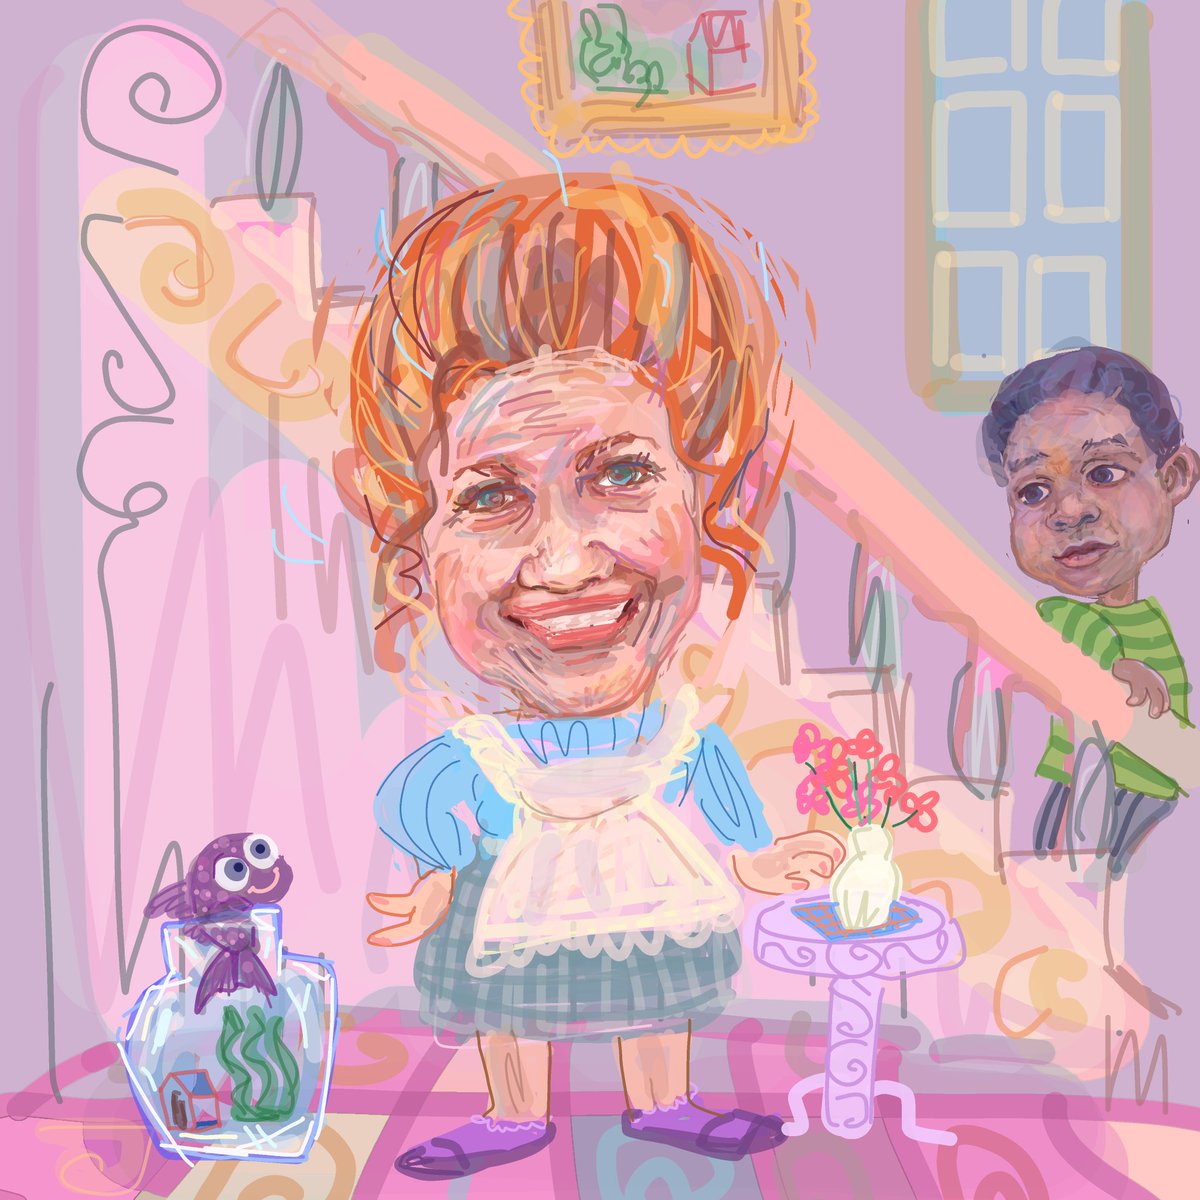 #シャーロット・レイ。
#4月22日 が生誕日。

80sにヒットした
【#アーノルド坊やは人気者】にて
陽気な初代お手伝い
ギャレット夫人を演じた。

主役の子供たちを支える
ユーモラスで快活なキャラは
好評を博し
スピンオフが出来る程

#illustration
#イラスト
#CharllotteRae 
 #DiffrentStrokes